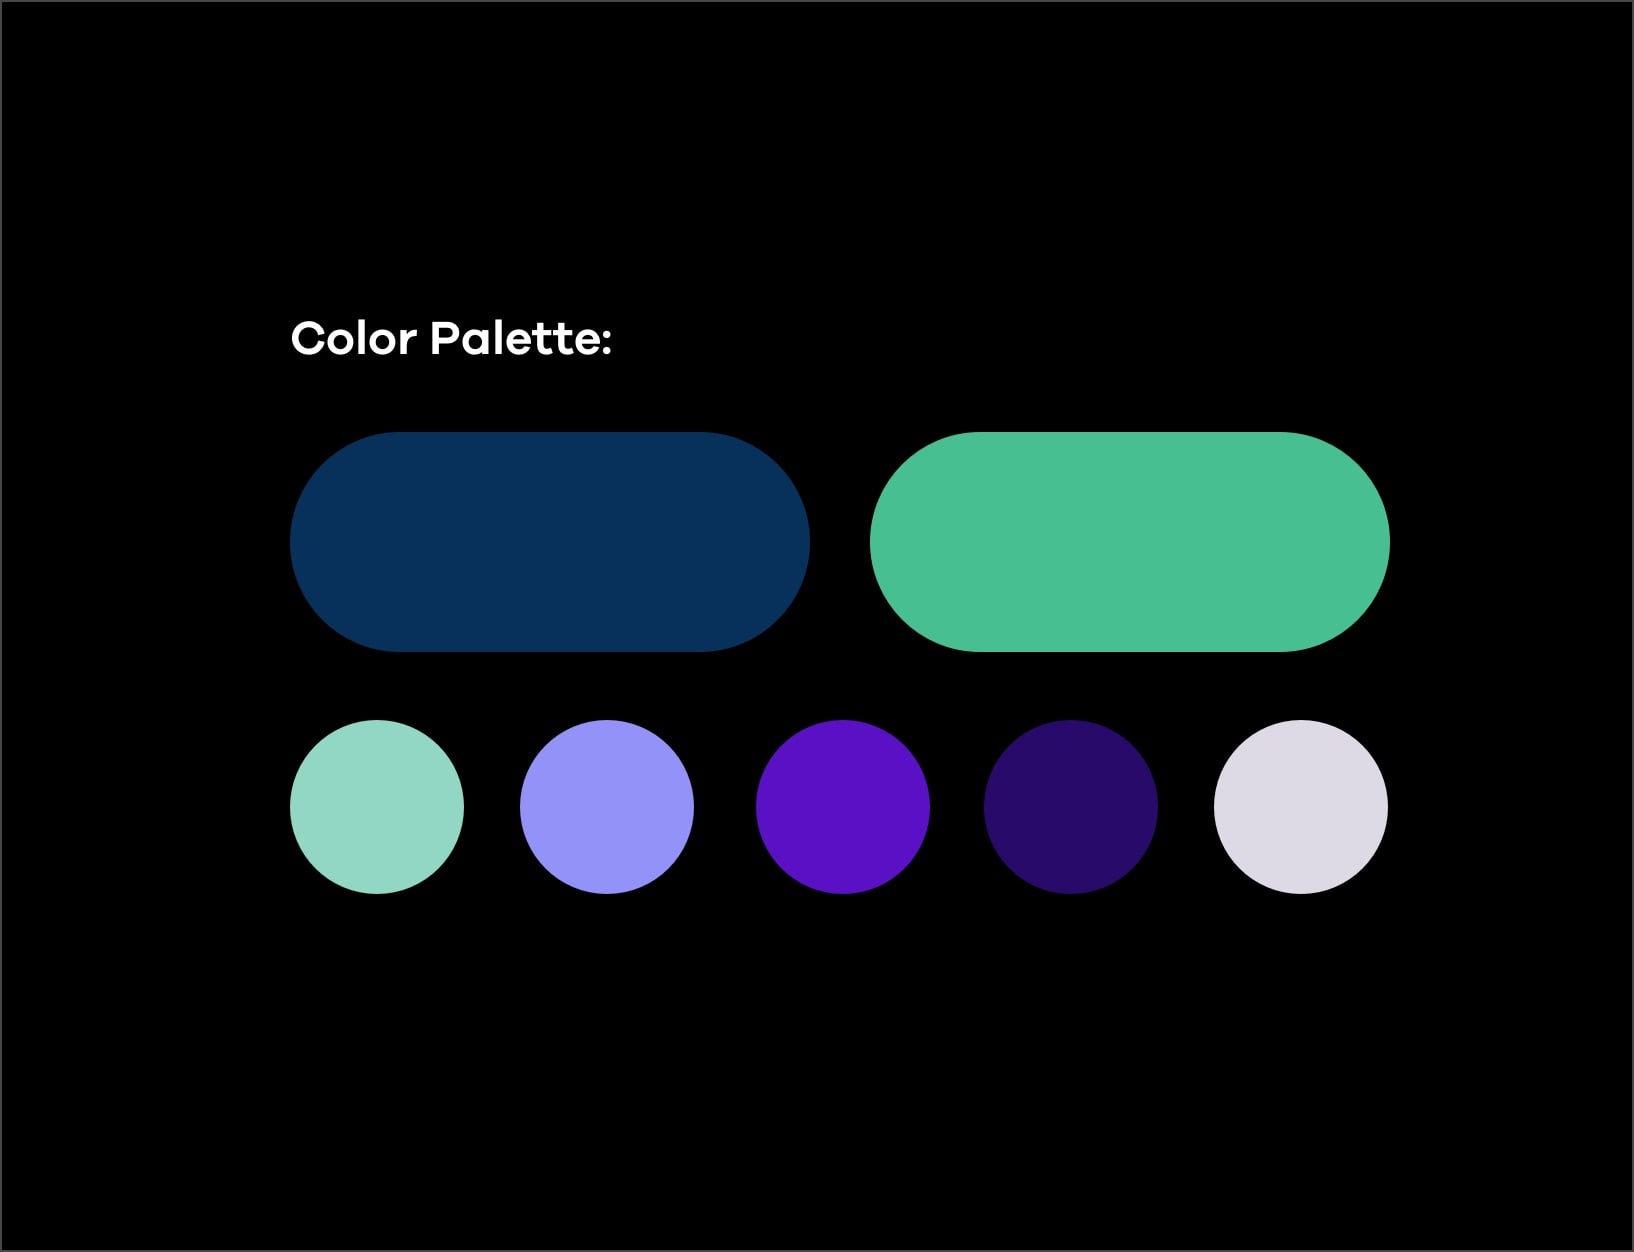 color palette - teals, blue, purples